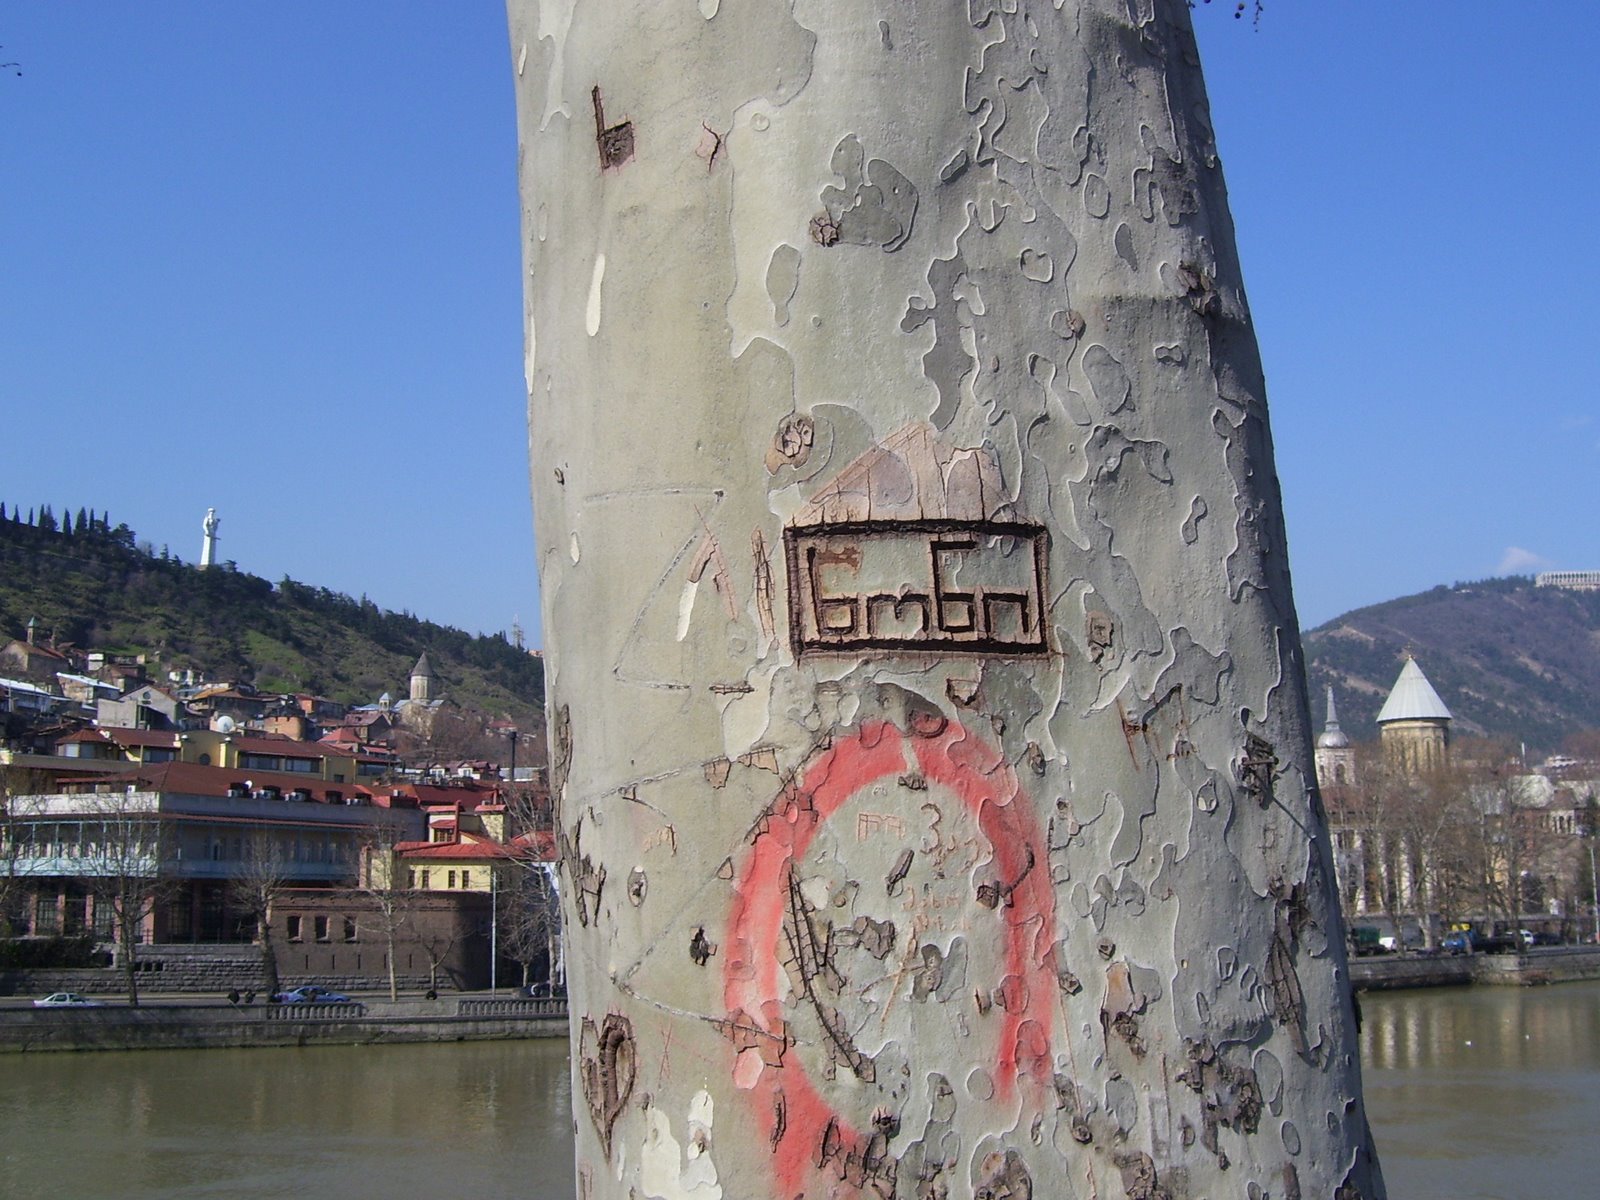 [tbl+graffiti+on+tree.JPG]